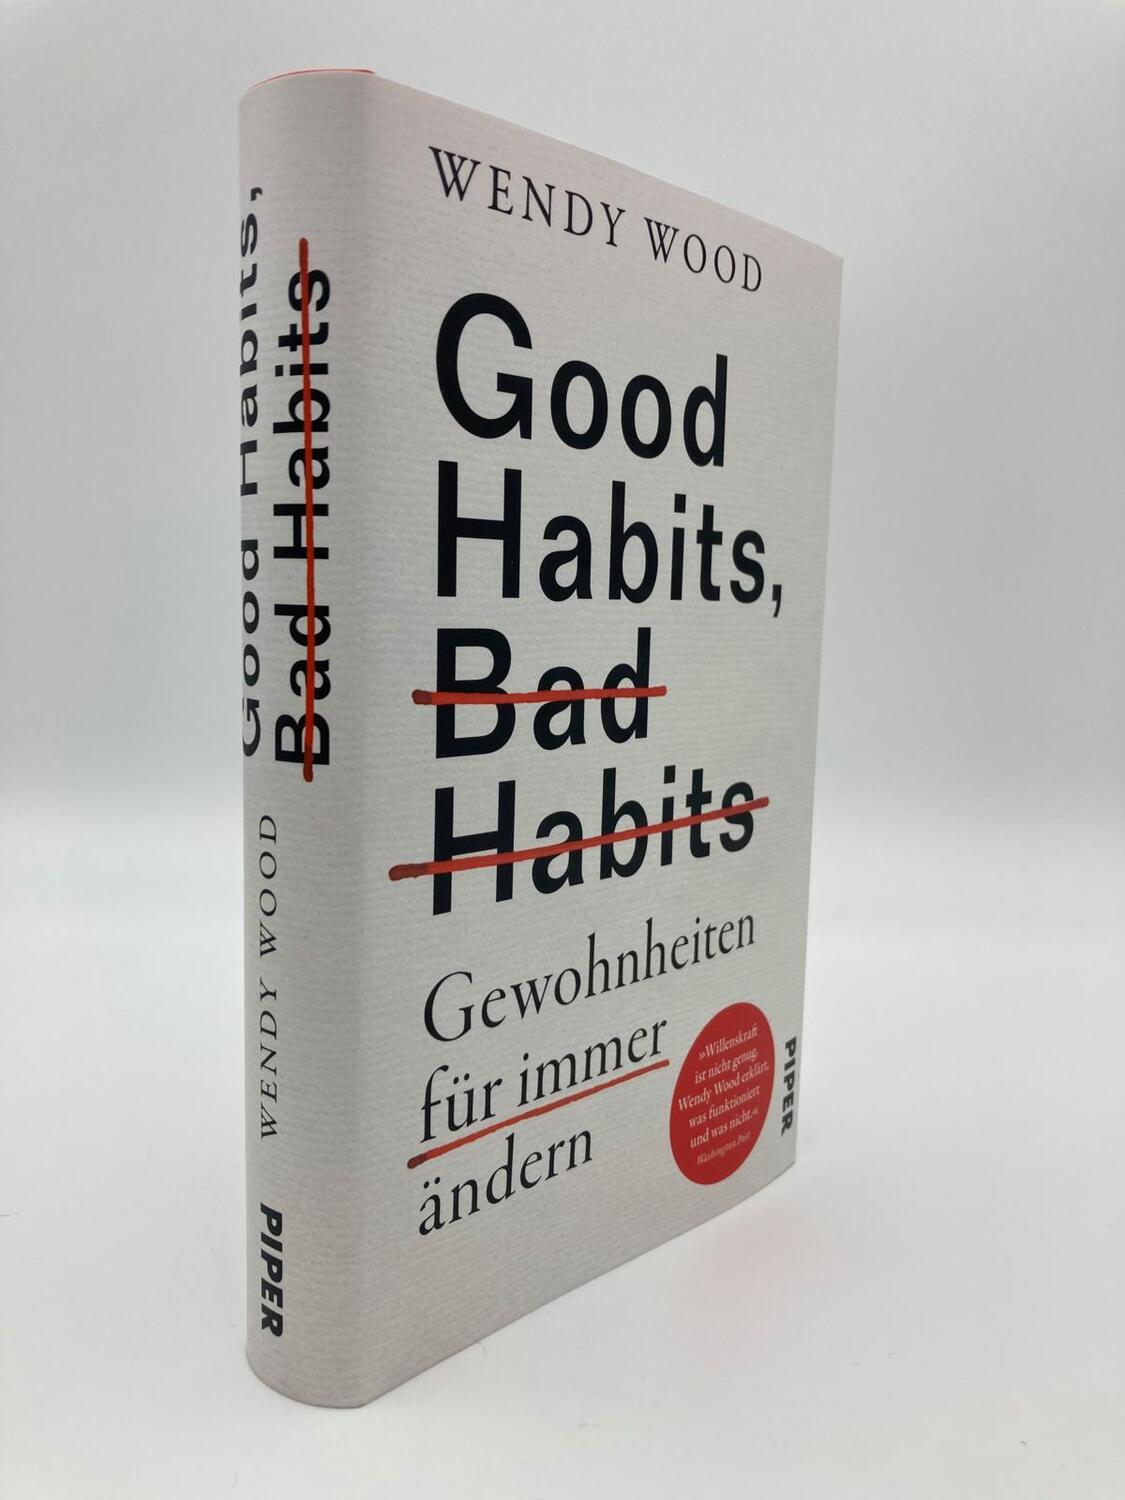 Bild: 9783492070799 | Good Habits, Bad Habits - Gewohnheiten für immer ändern | Wendy Wood